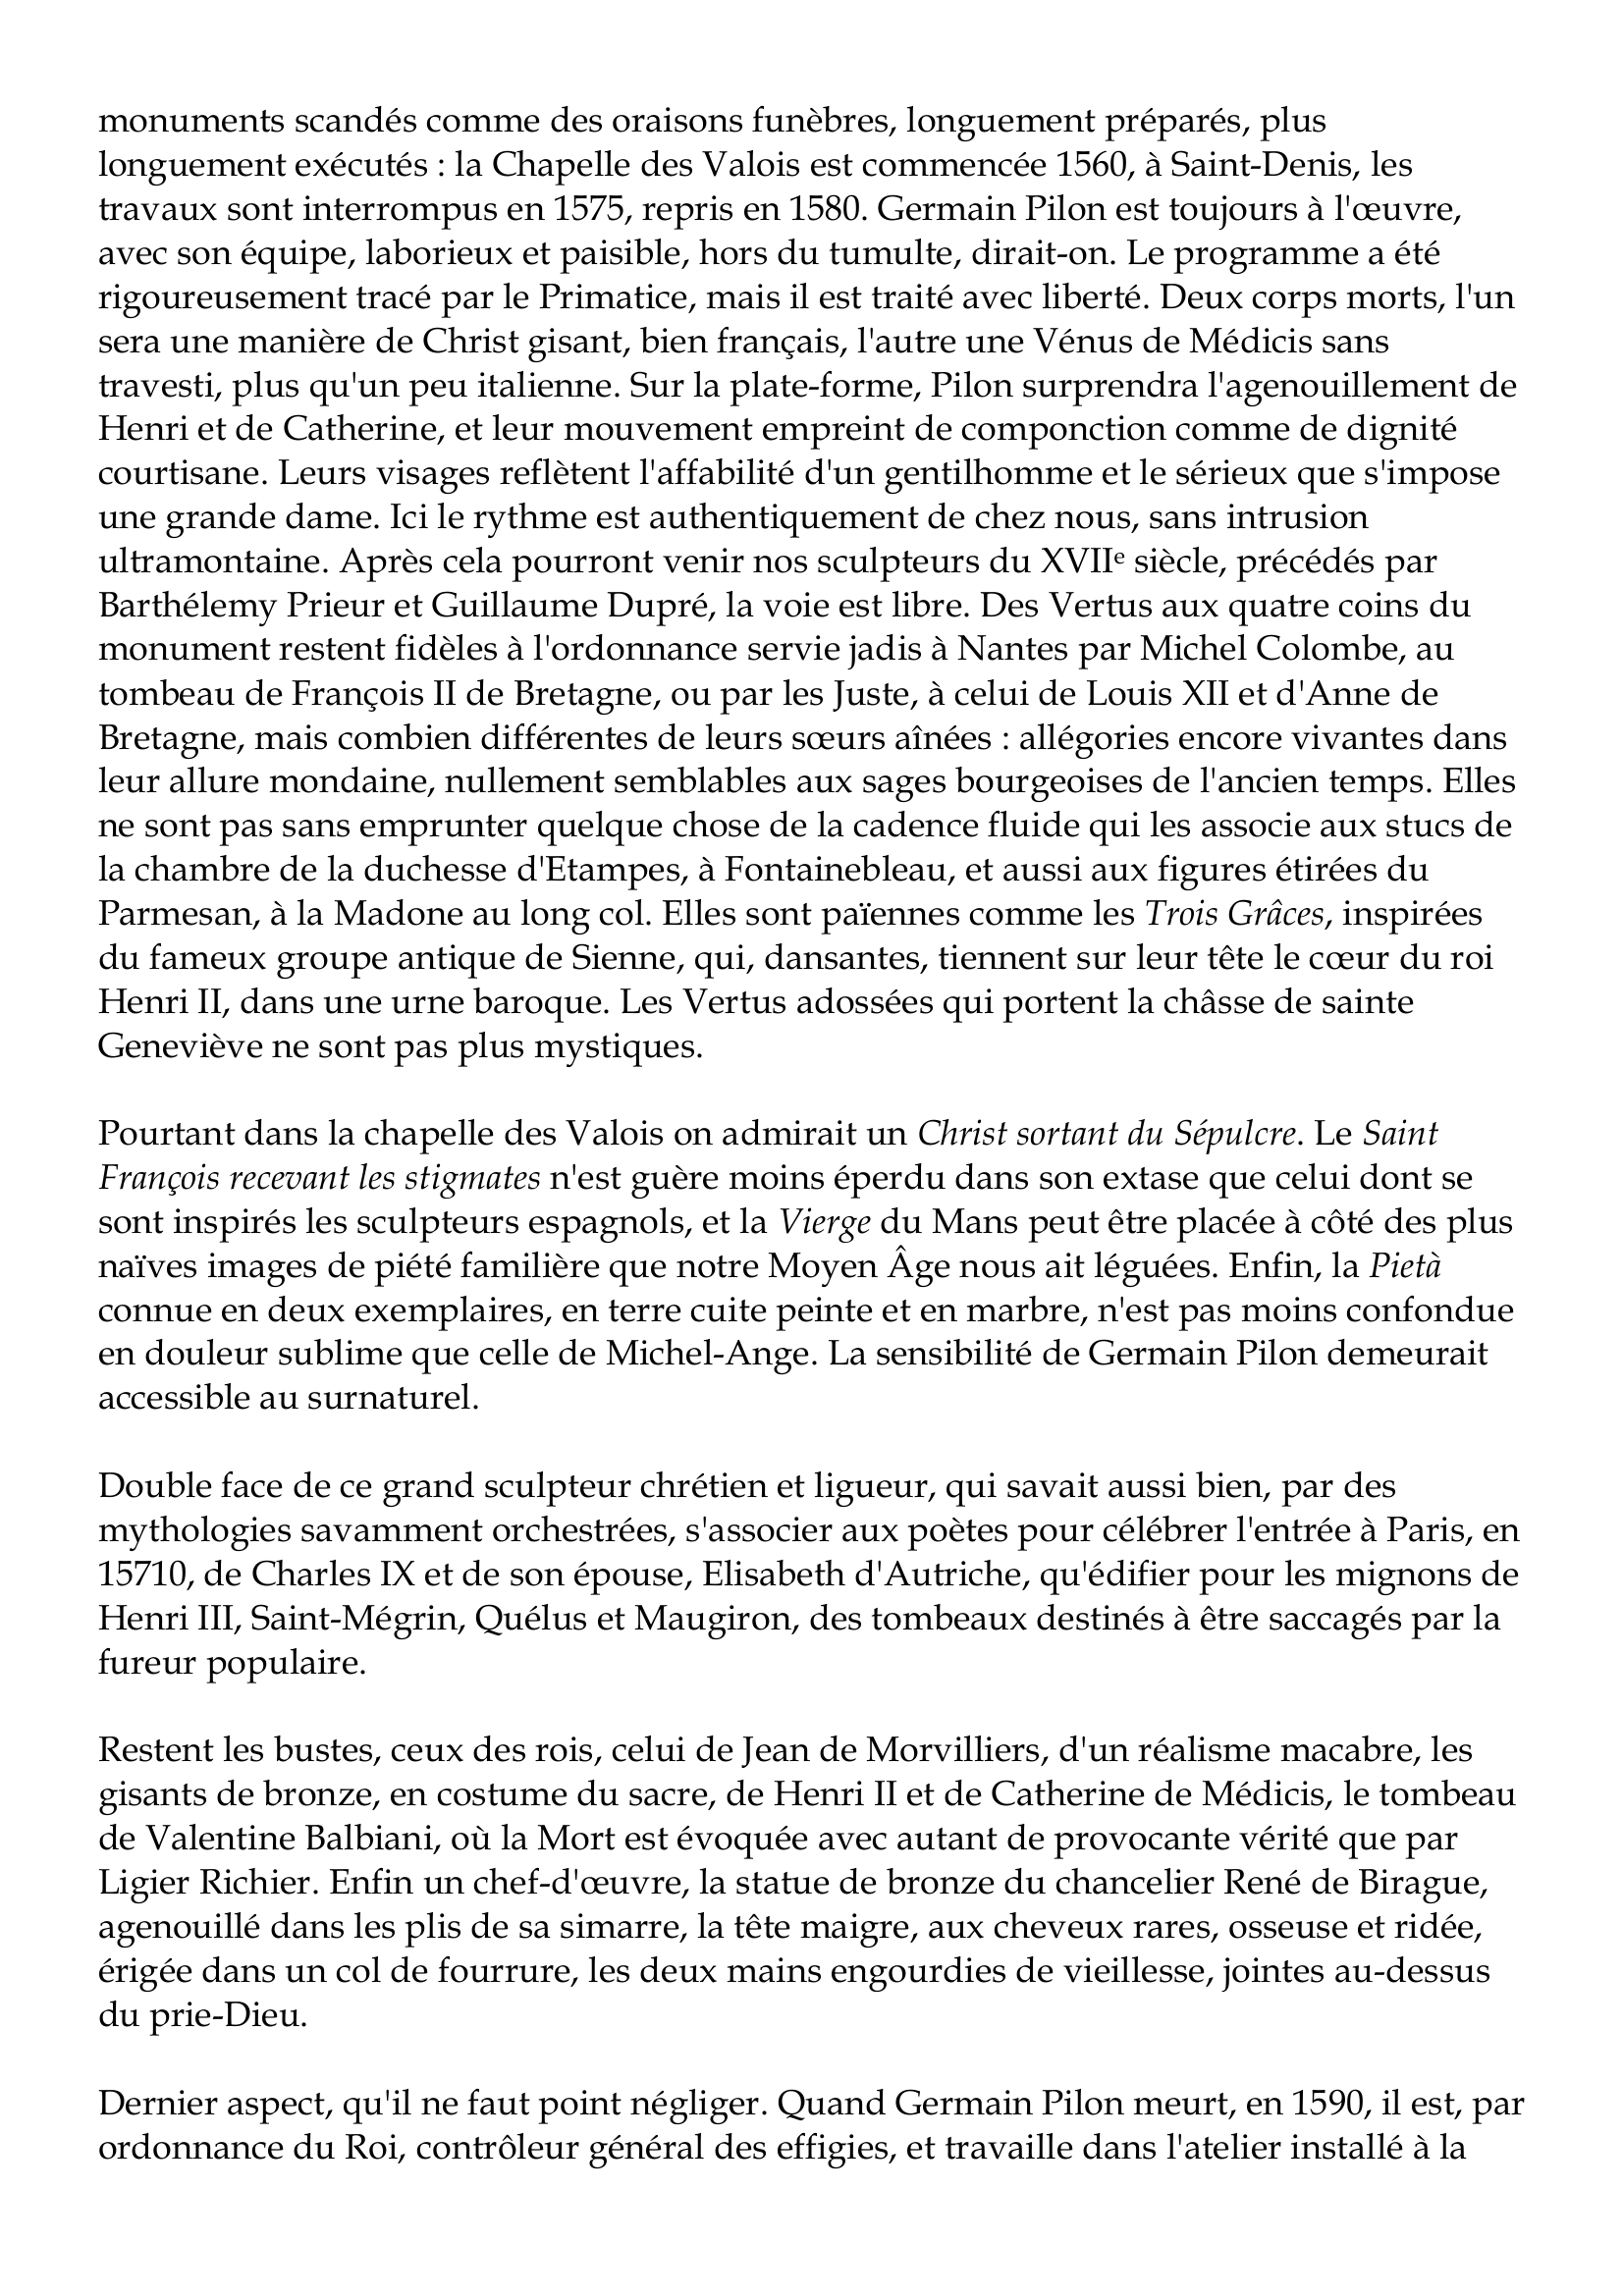 Prévisualisation du document Germain Pilon
1537-1590
Ce n'est pas assez de dire que Germain Pilon